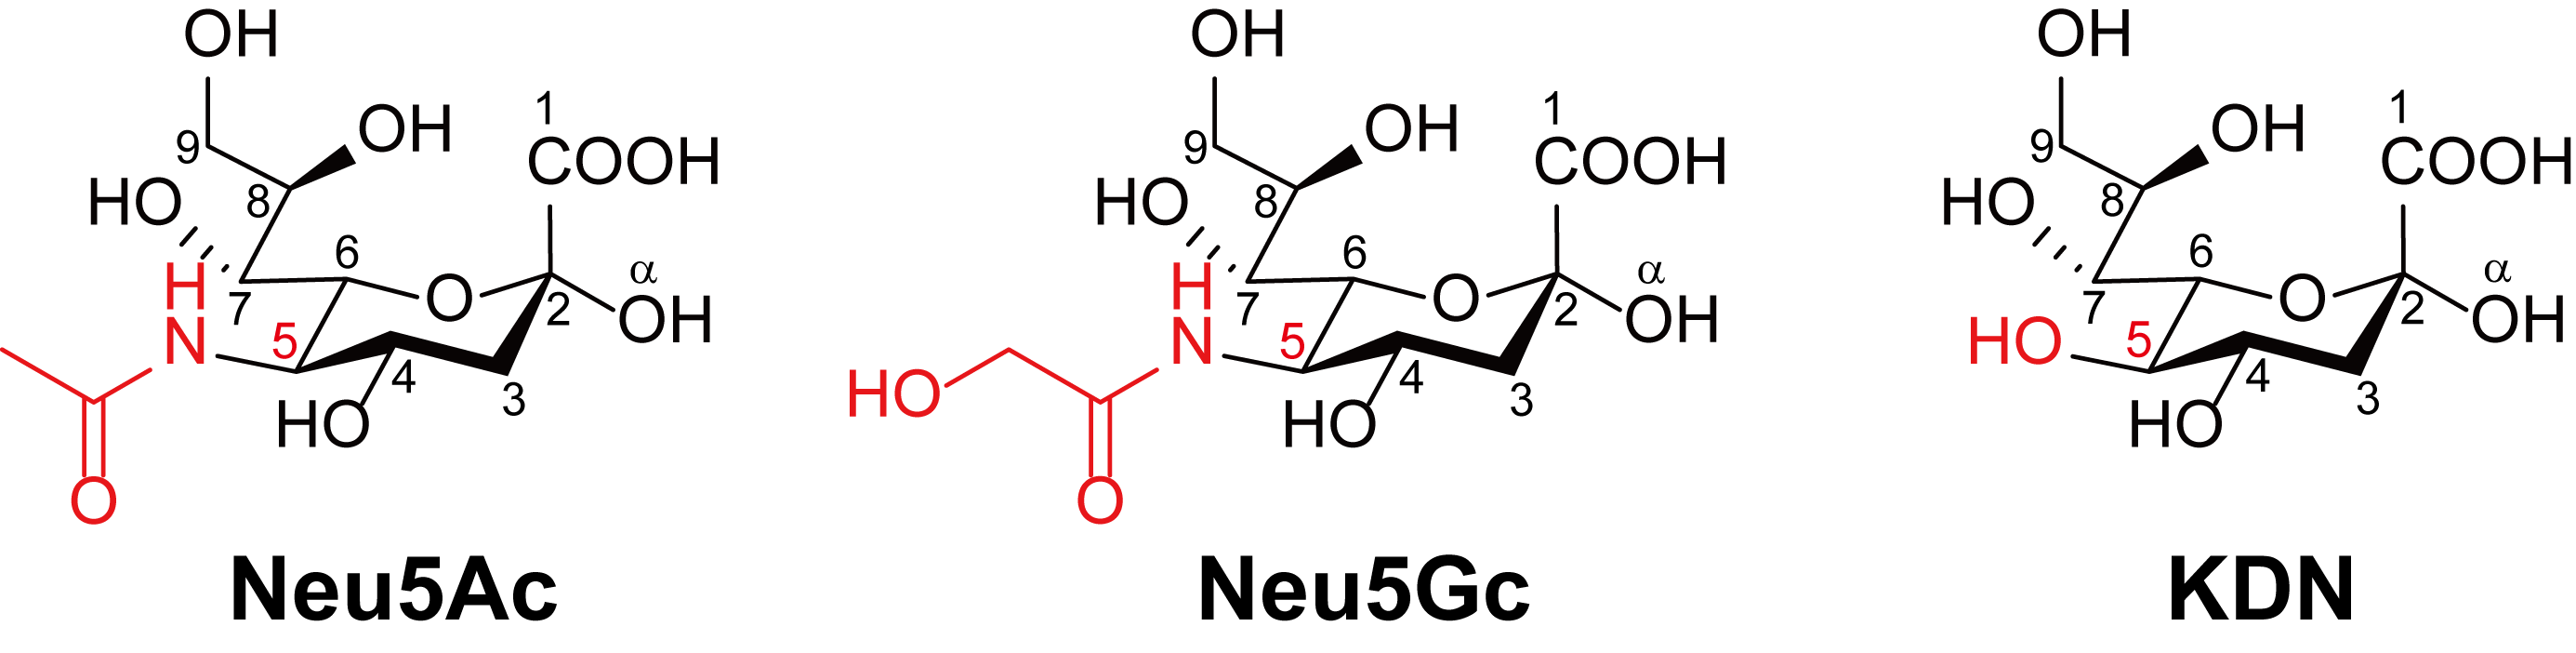 第 35 話 シアル酸とは シアル酸の構造 医化学創薬株式会社